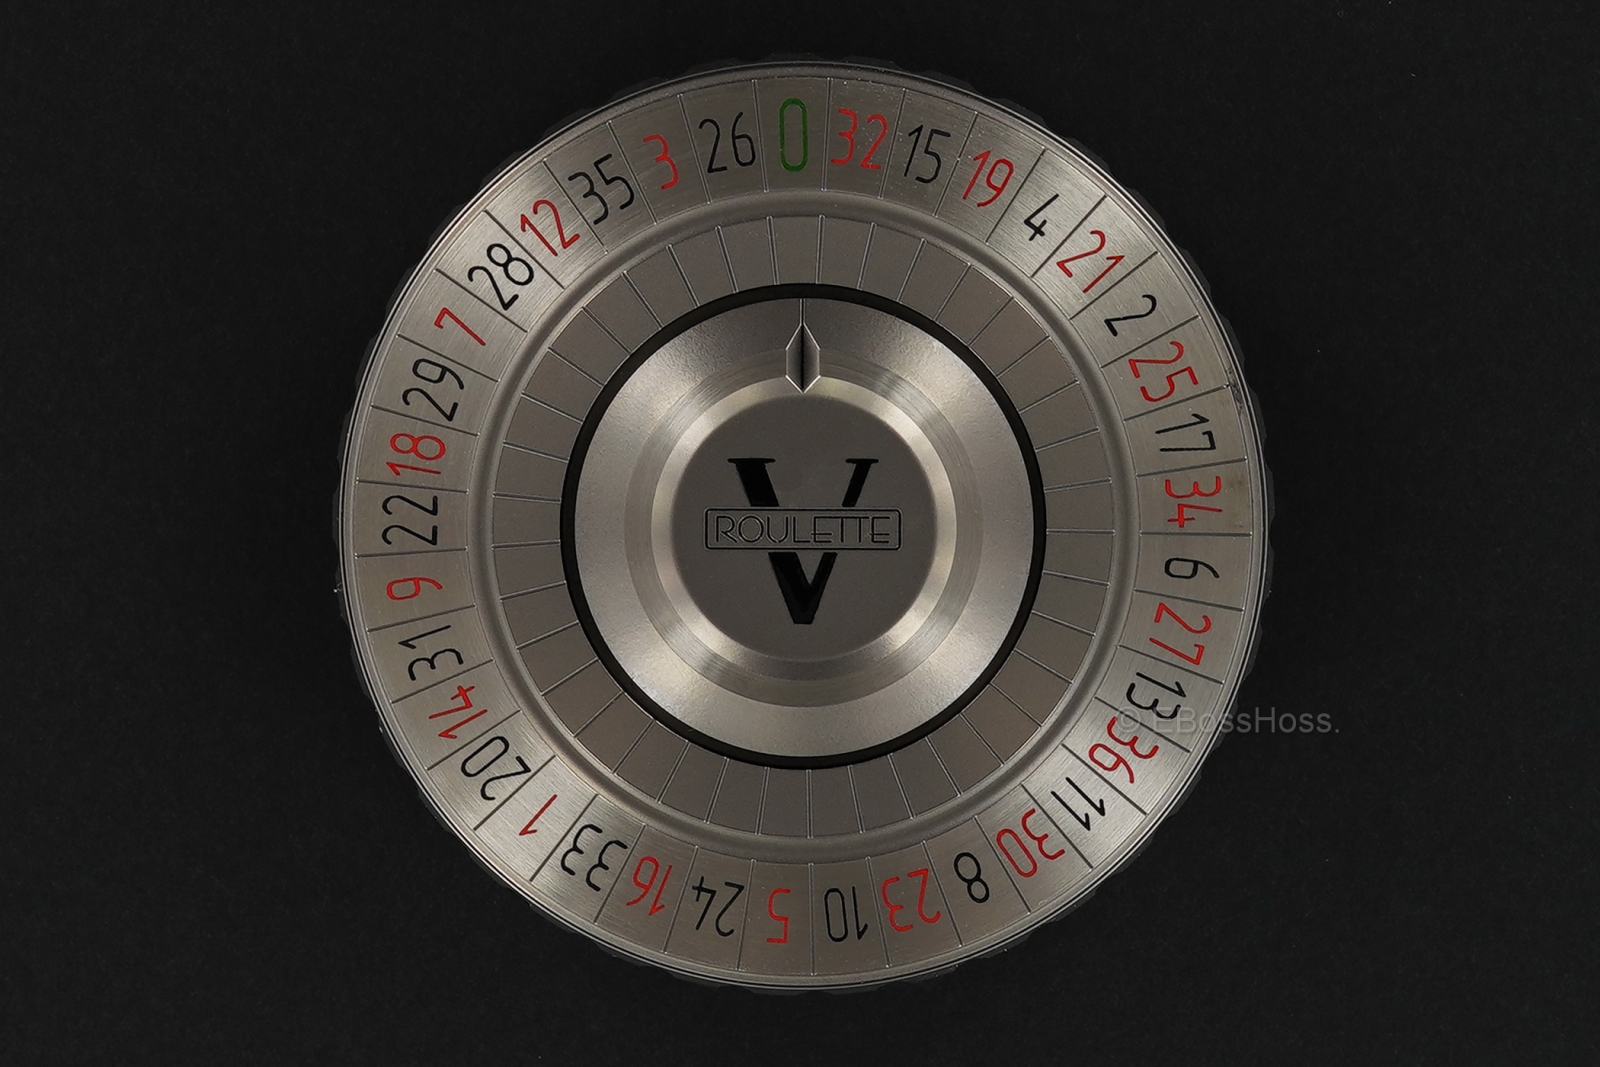 Shirogorov Pocket Roulette Fidget Spinner